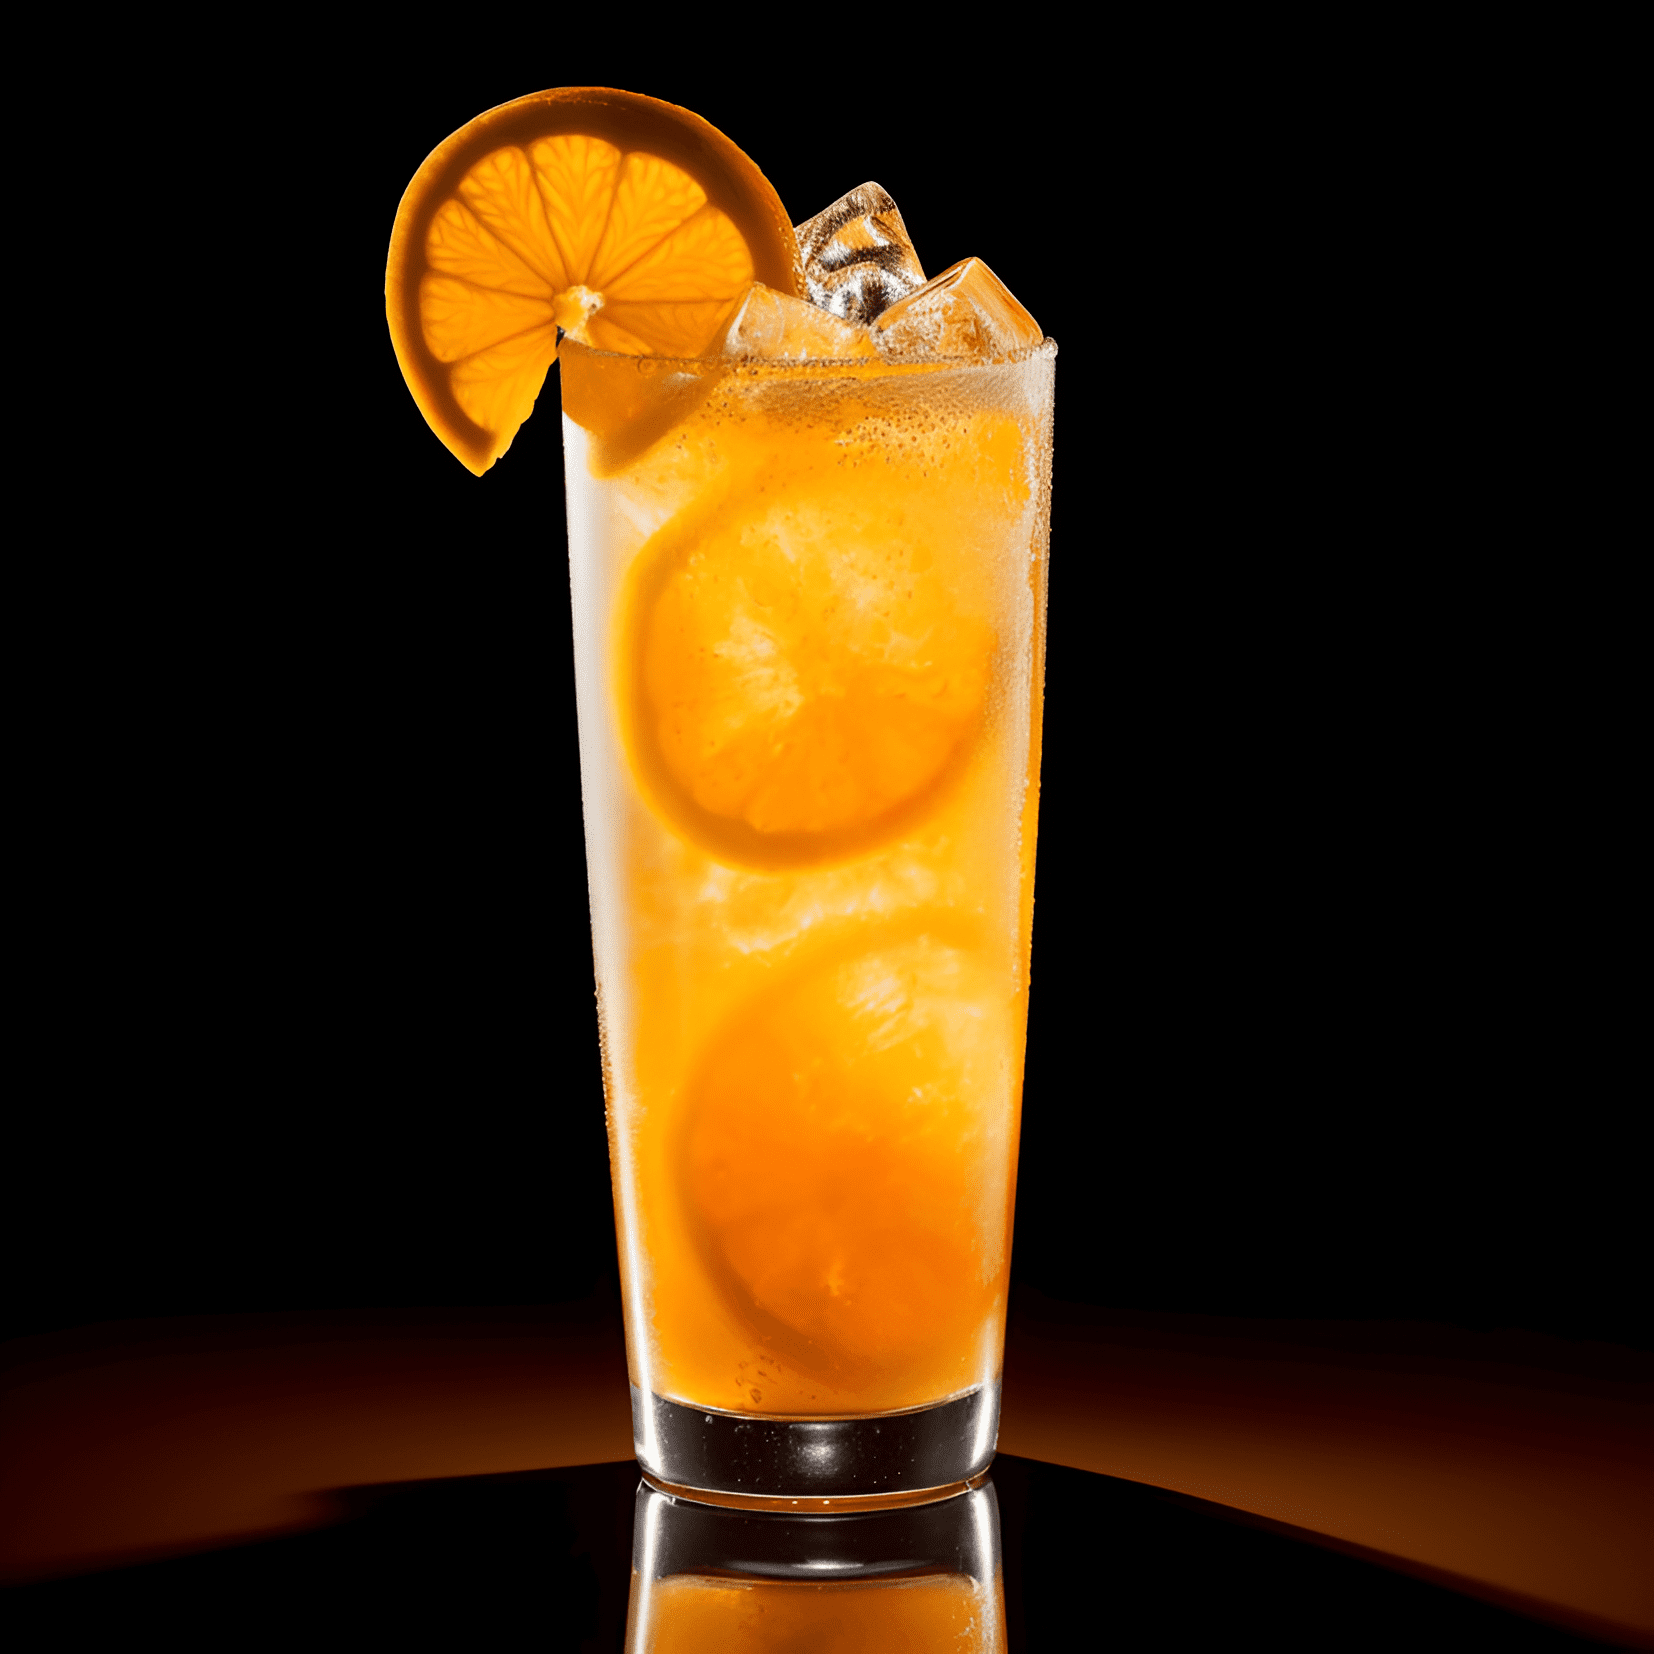 Orange Fizz Cóctel Receta - El Orange Fizz tiene un equilibrio delicioso de sabores dulces y ácidos, con un sabor cítrico picante del jugo de naranja y una ligera amargura del licor de naranja. La adición de agua con gas le da una sensación ligera y efervescente en la boca, lo que lo convierte en un cóctel refrescante y fácil de beber.